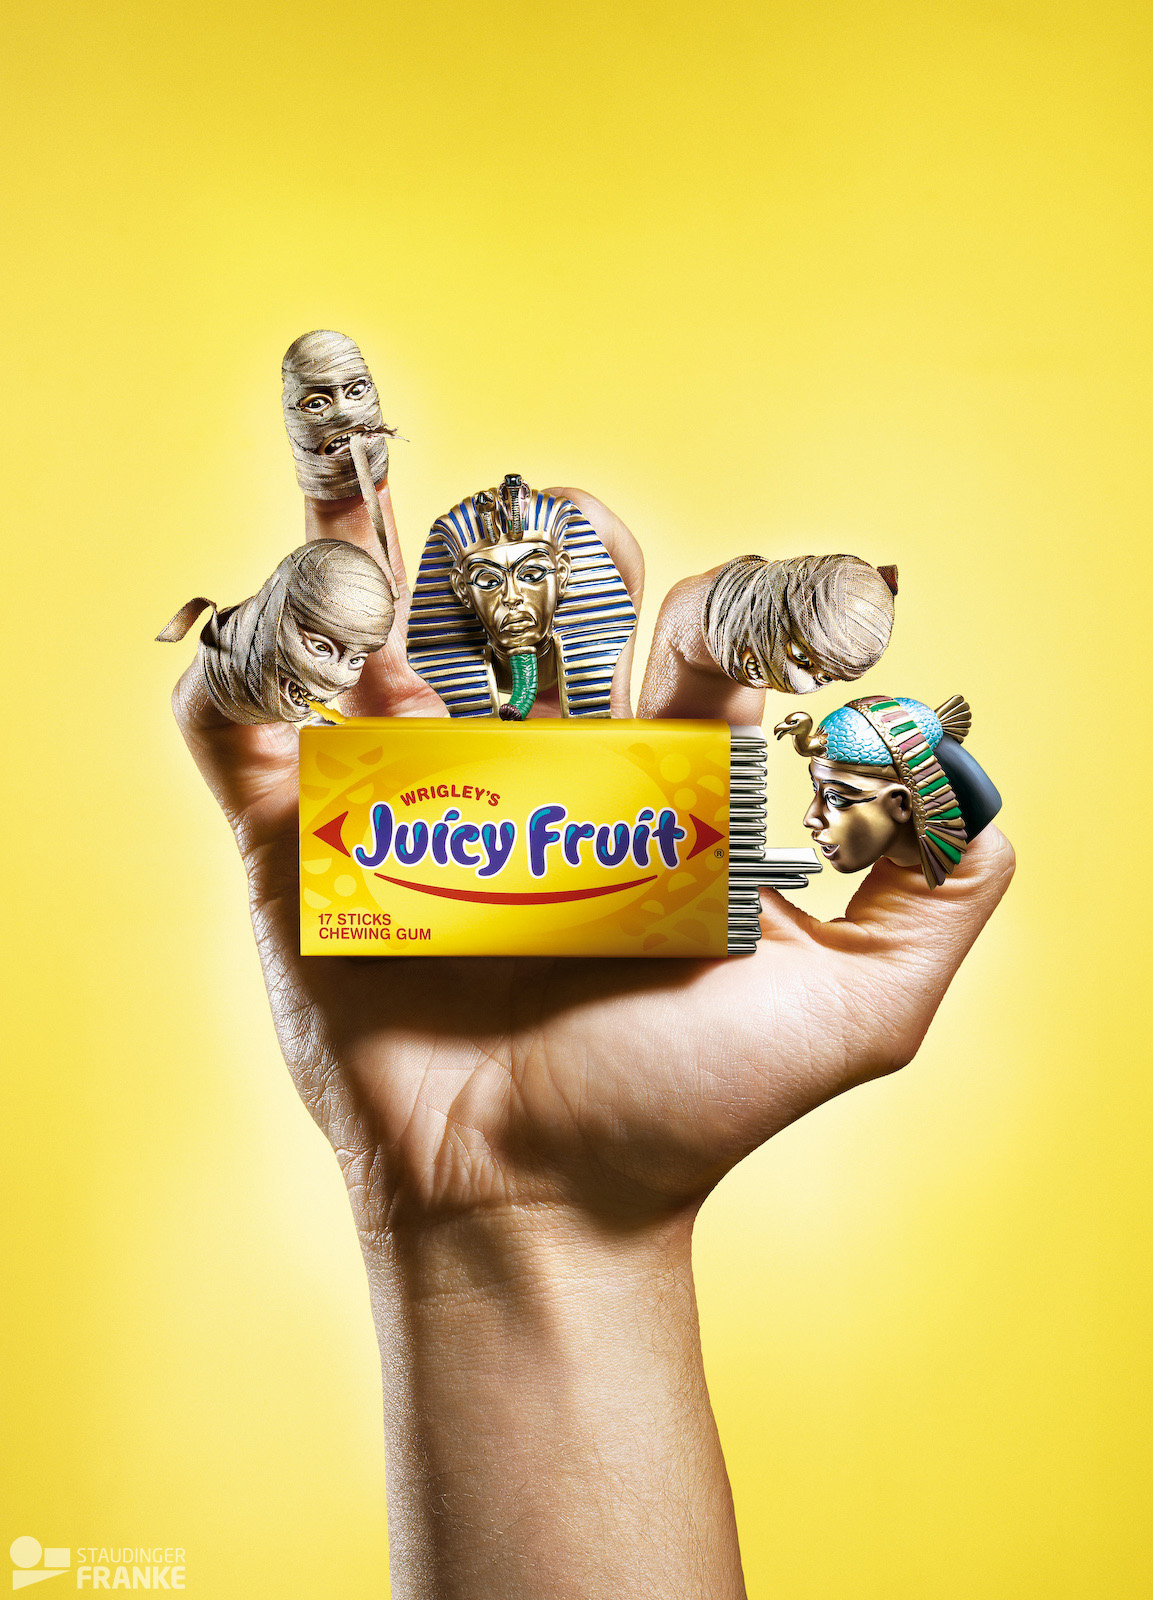 Juicy Fruit chewing gum tiki masks pirates Wrestler mummie wrigleys